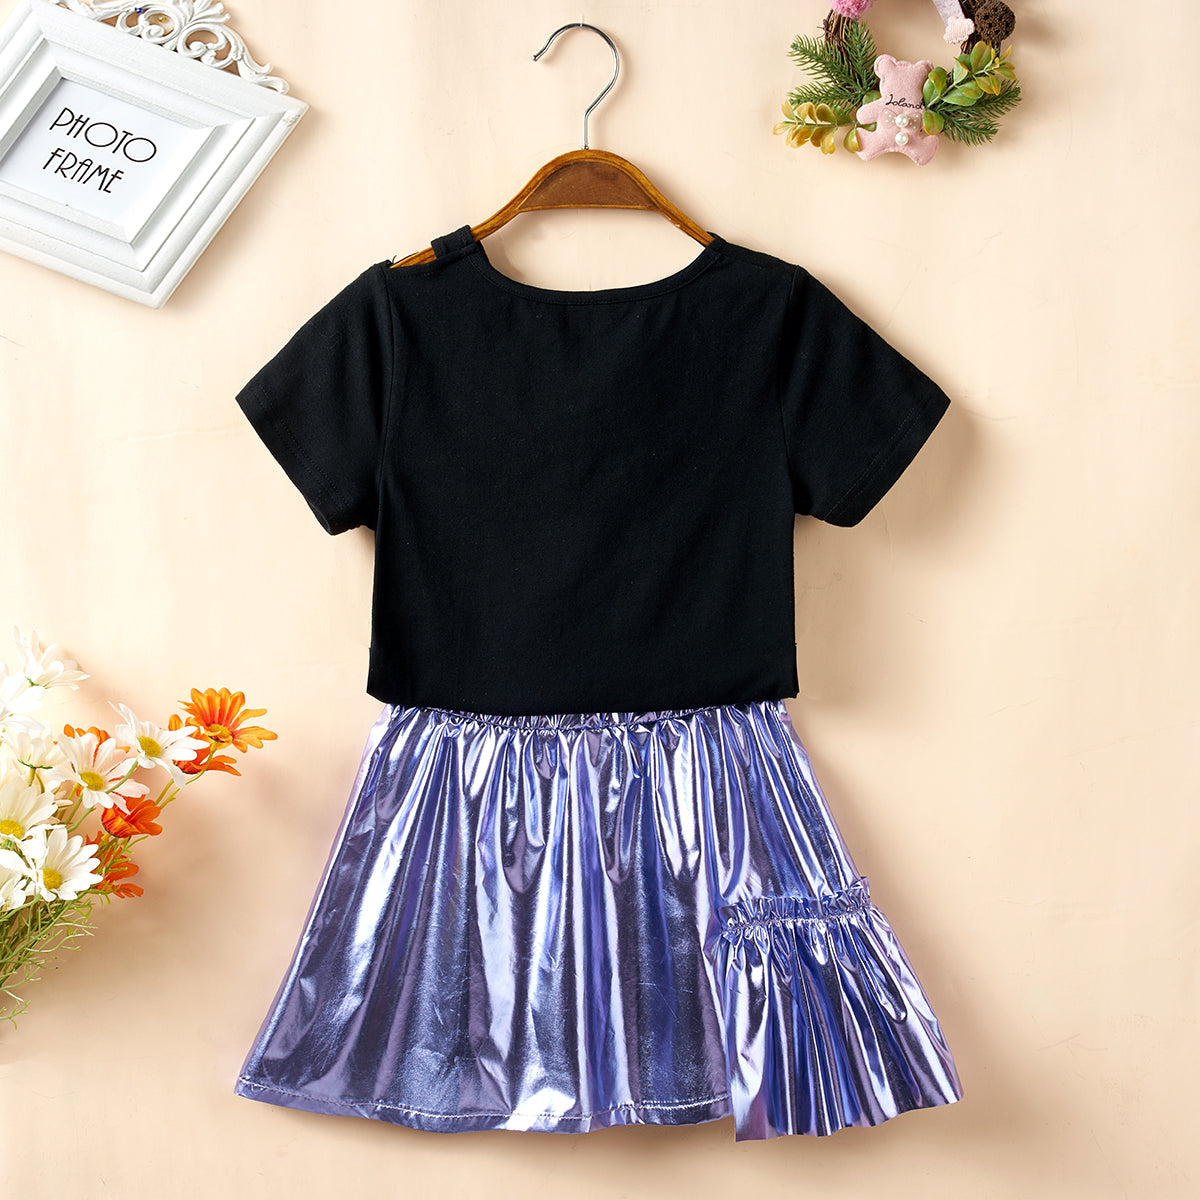 Children’s Girls Cutout Short Sleeve Top and Skirt Set